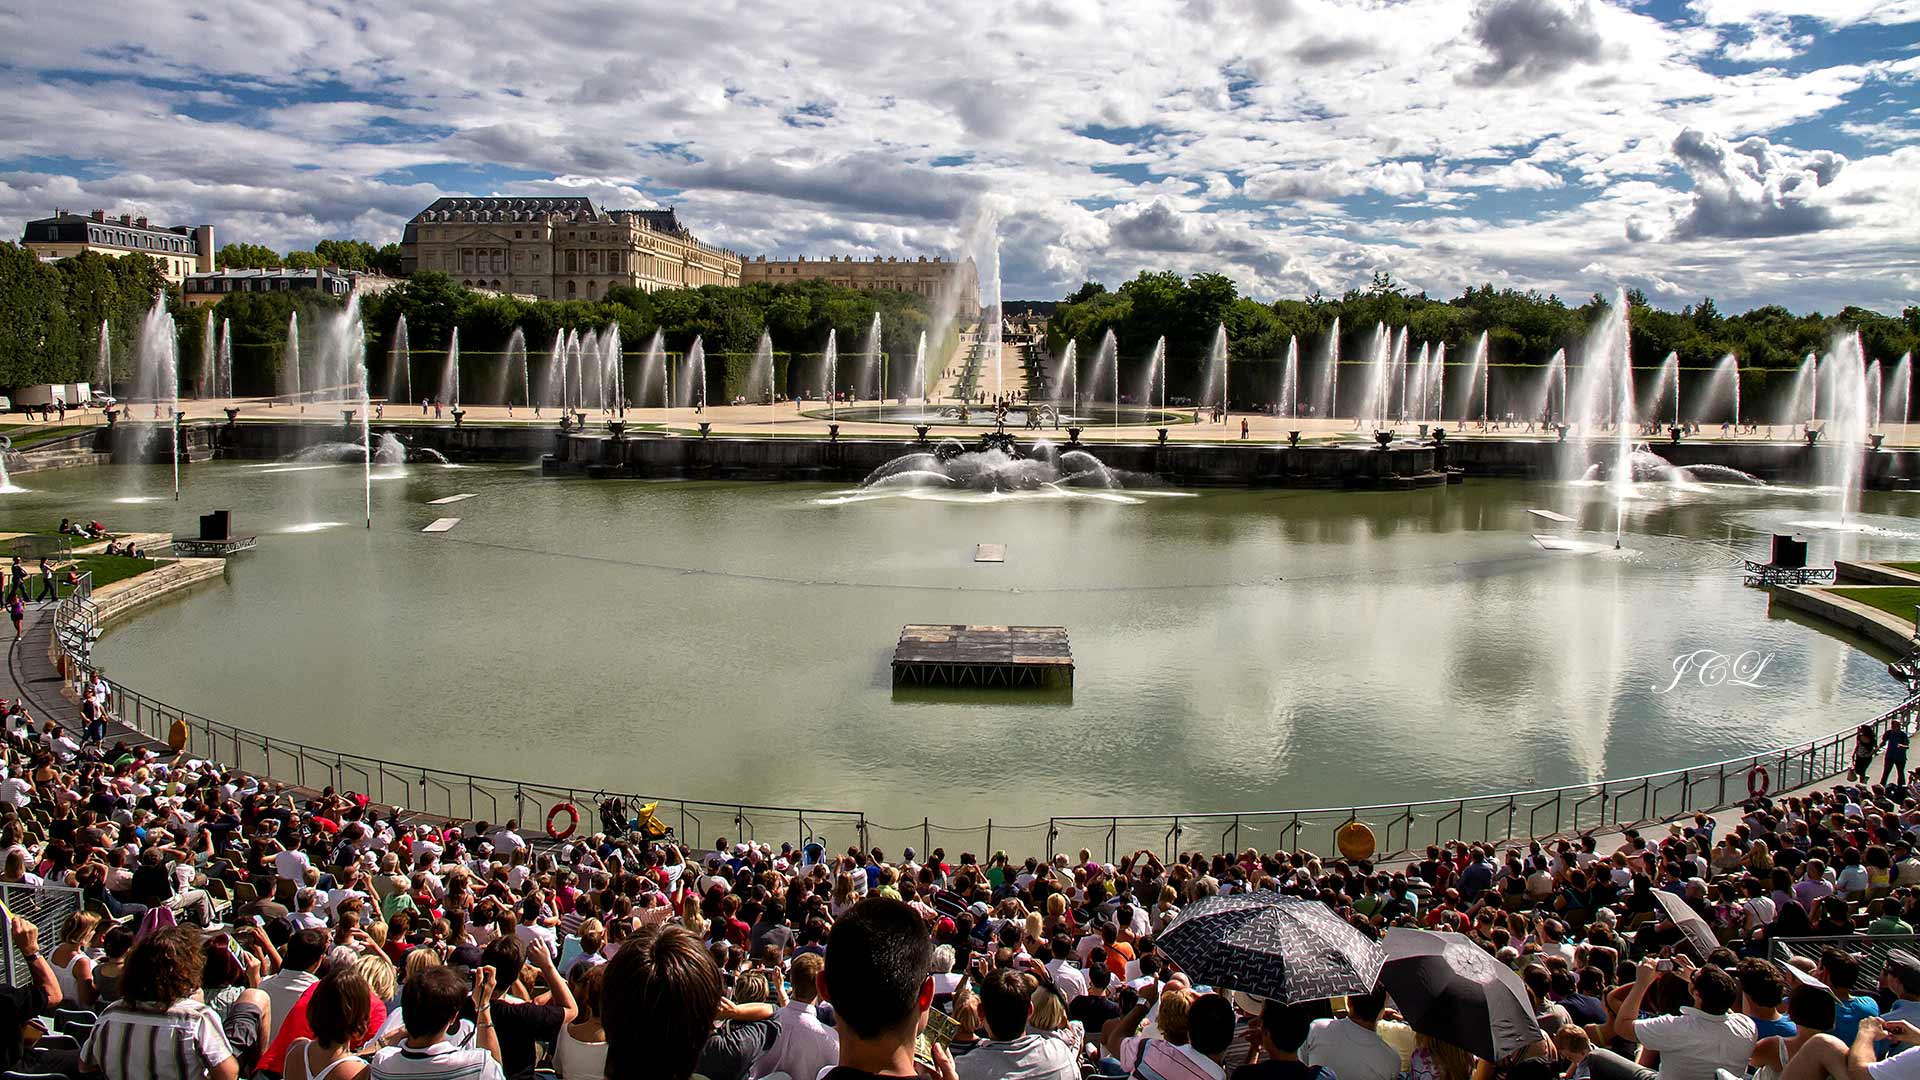 Le bassin de Neptune est un bassin artificiel situé dans le parc du château de Versailles.